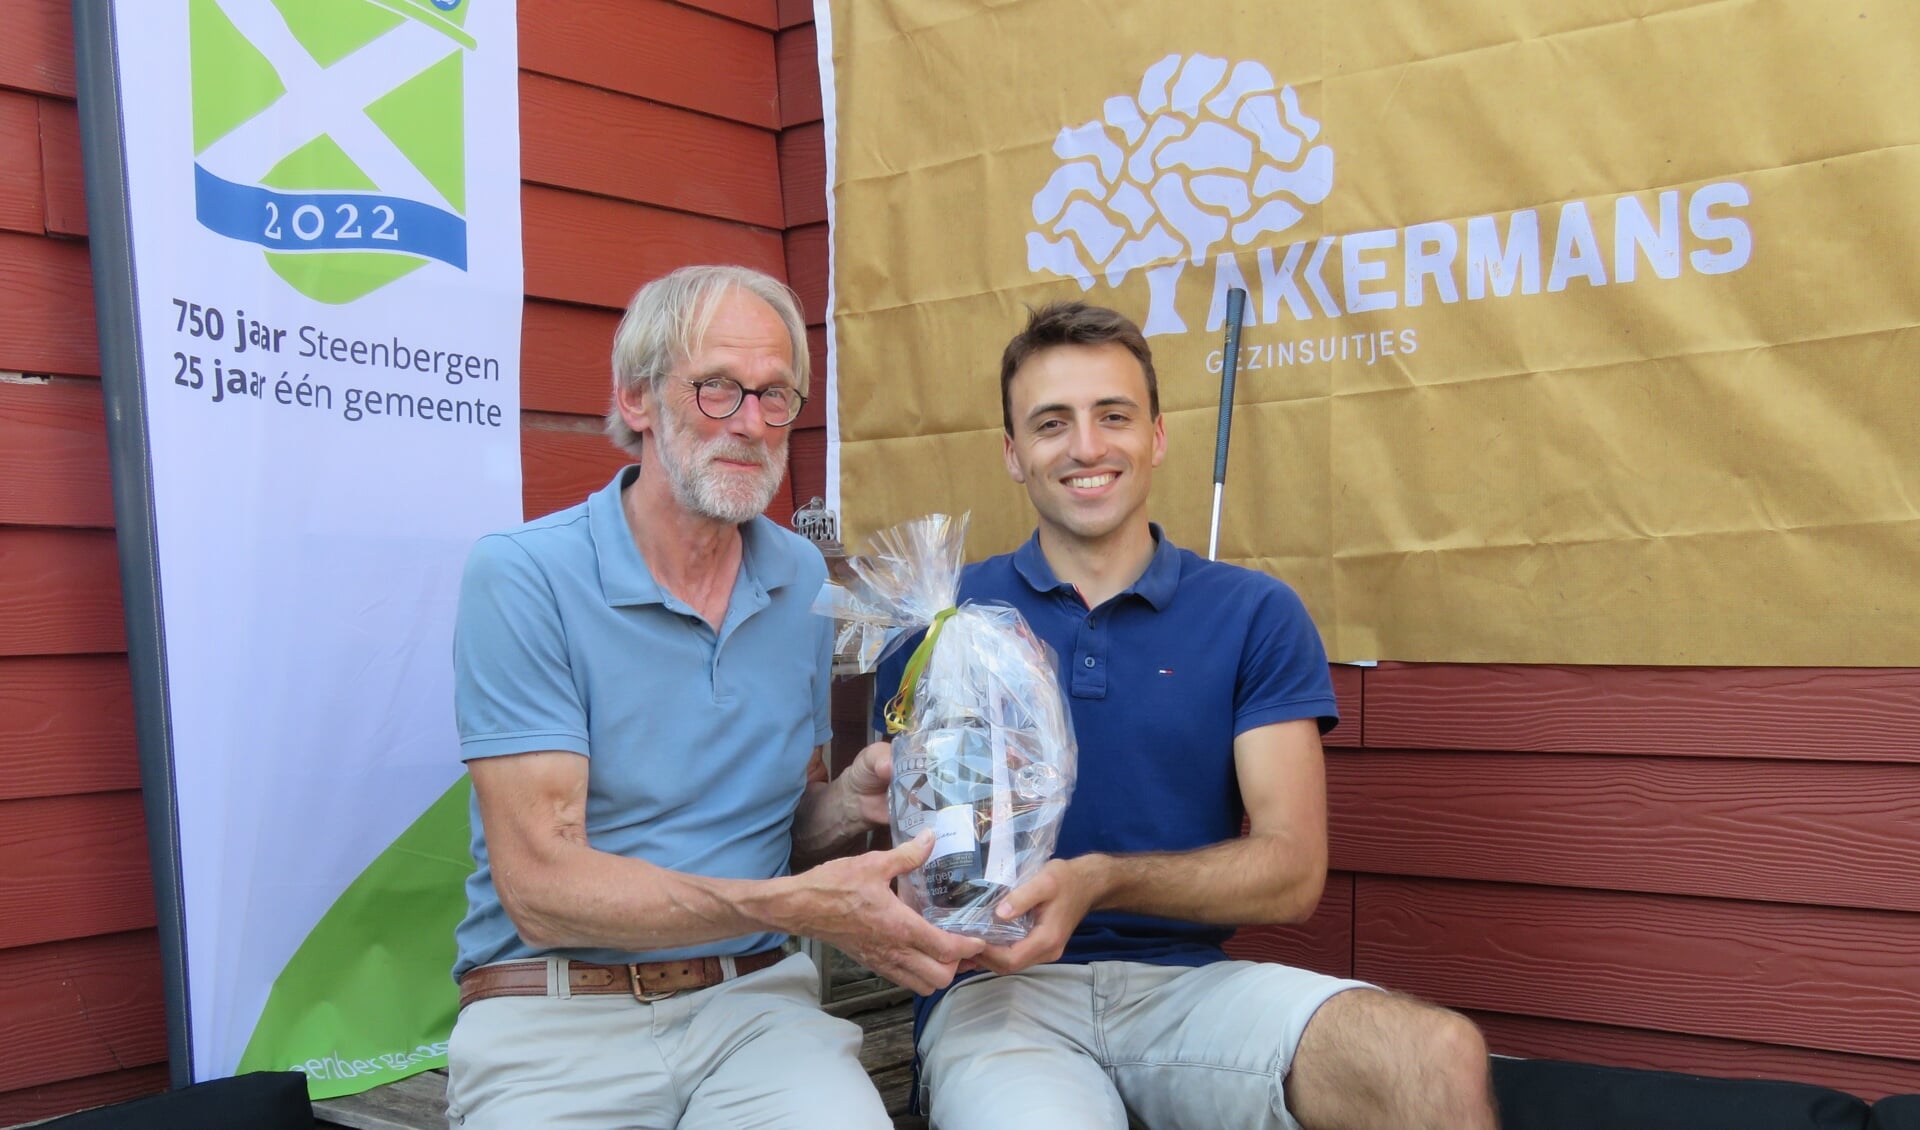 Organisator Jos Akkermans overhandigt Niels Ernest de 1e prijs van de golfwedstrijd 750 jaar Steenbergen.